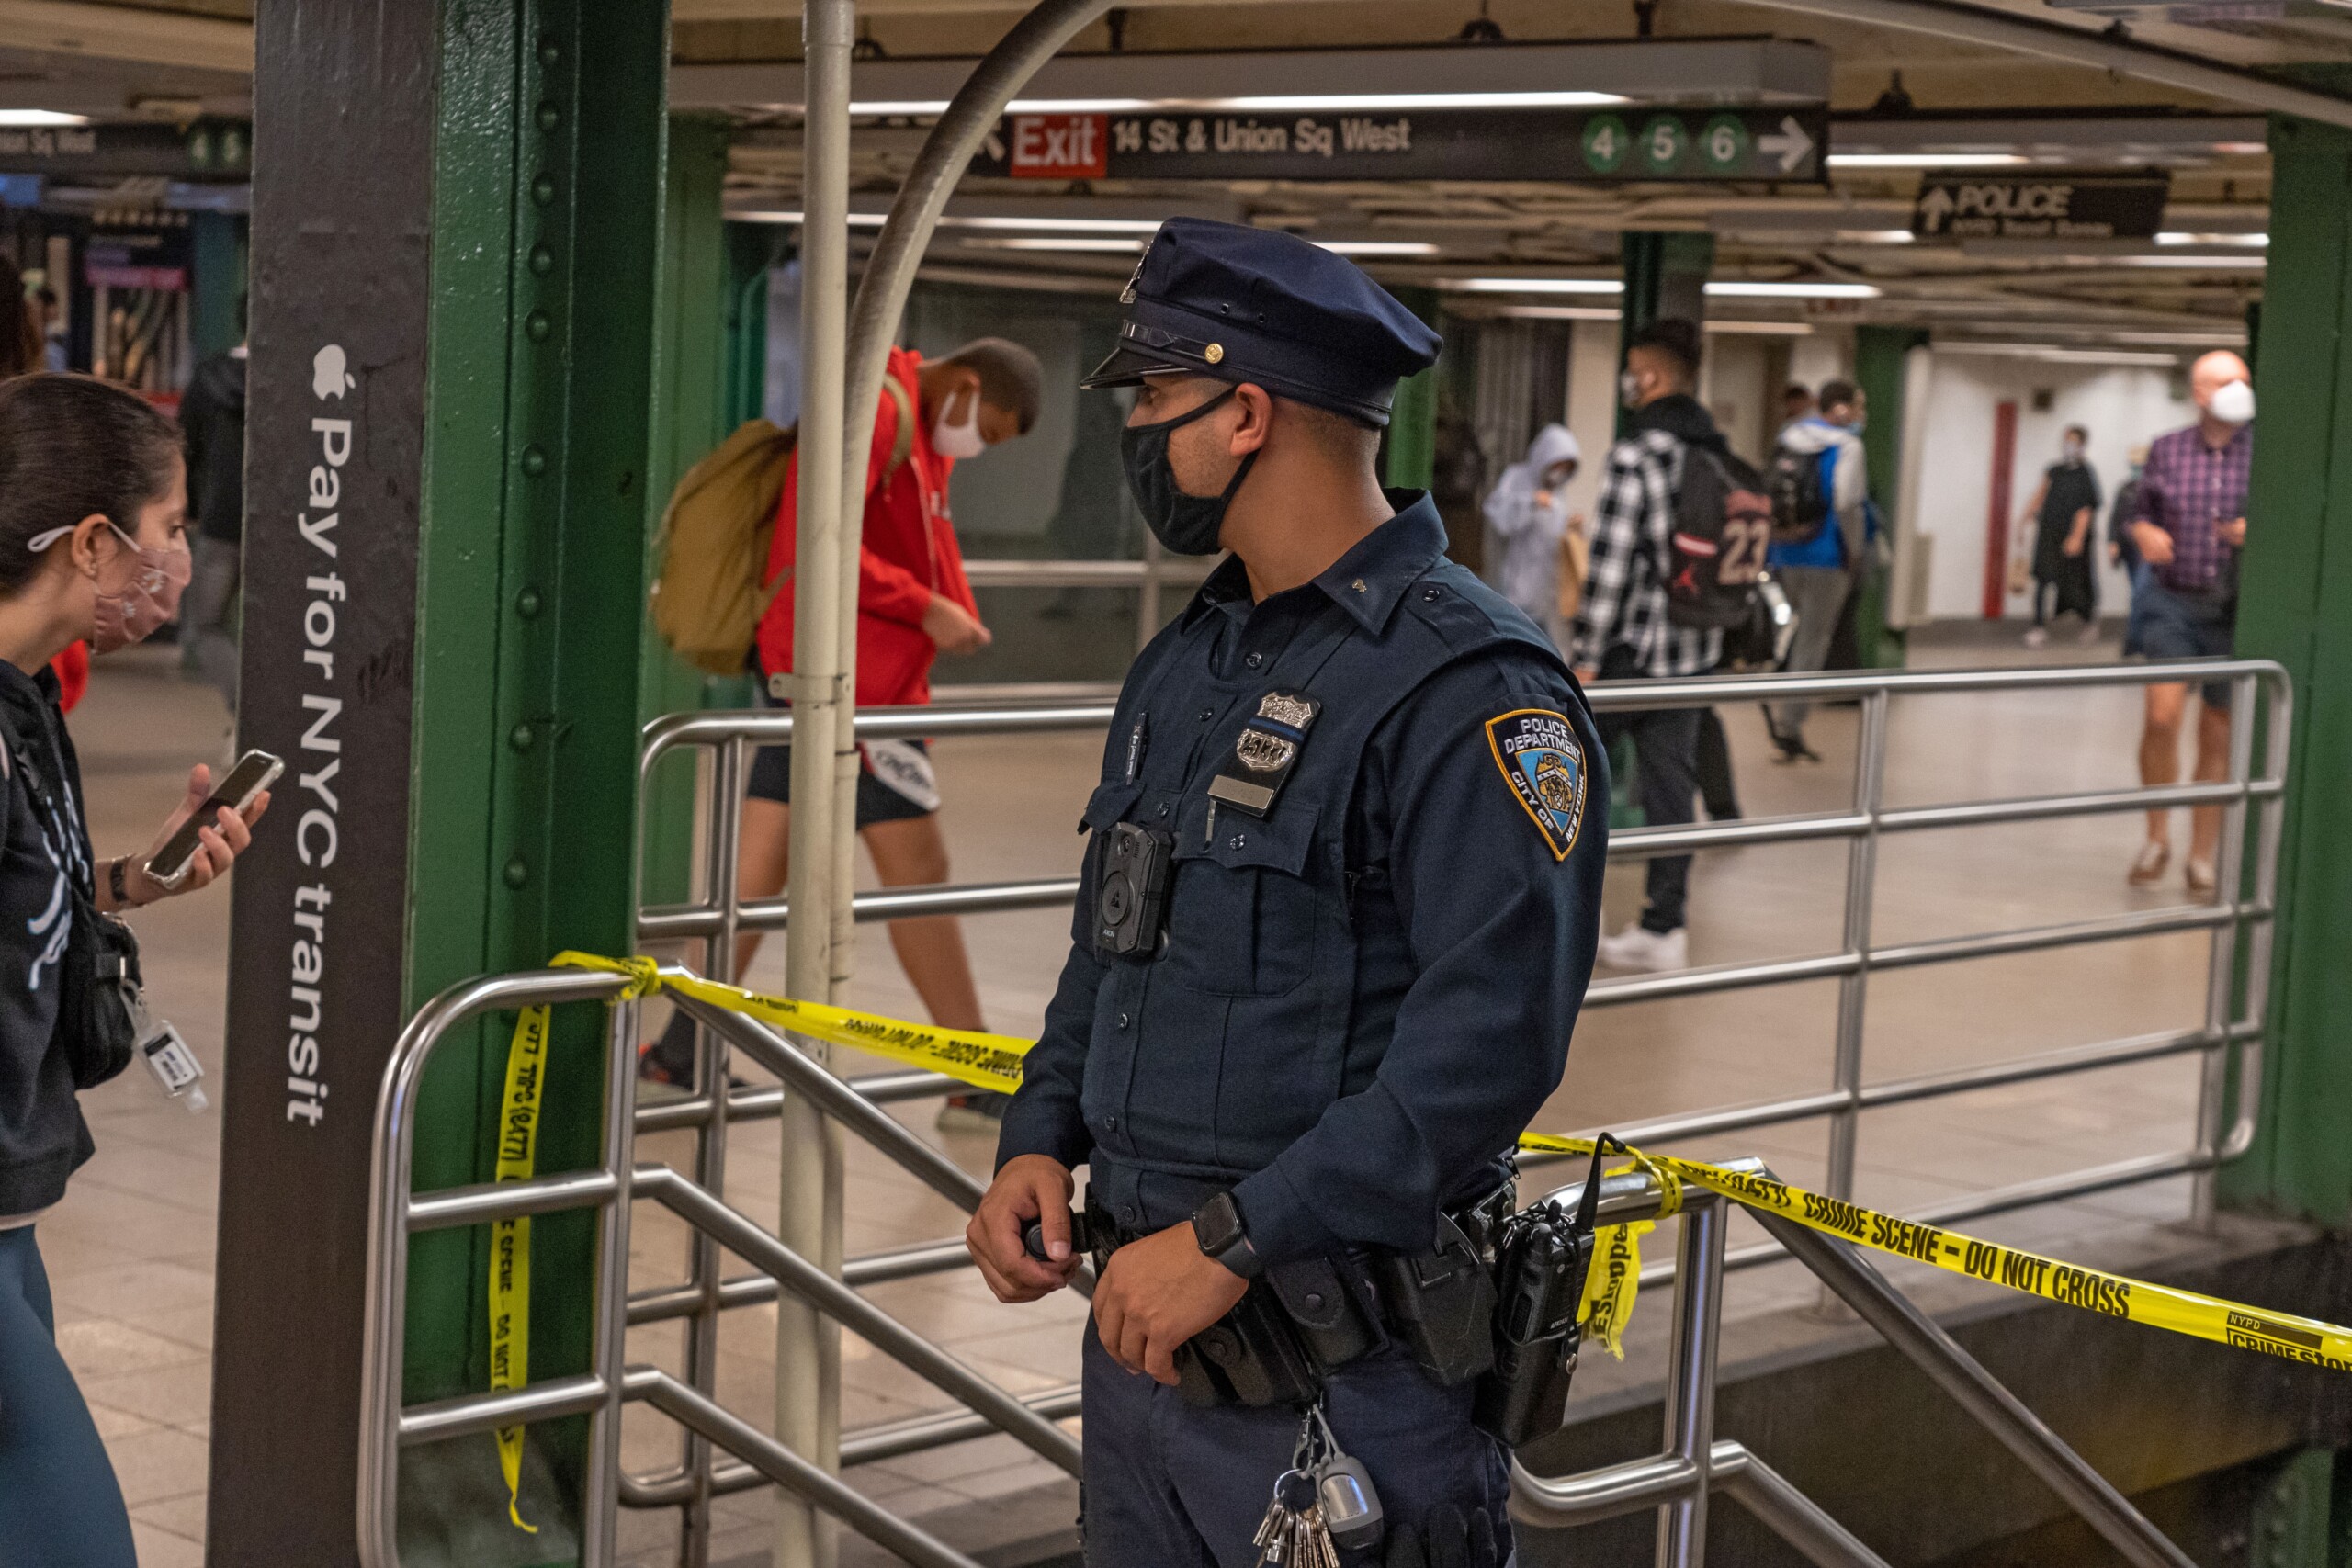 NEW YORK, NY – OCTOBER 25: NYPD zabezpiecza Nowy Jork, licencja: shutterstock/By Ron Adar